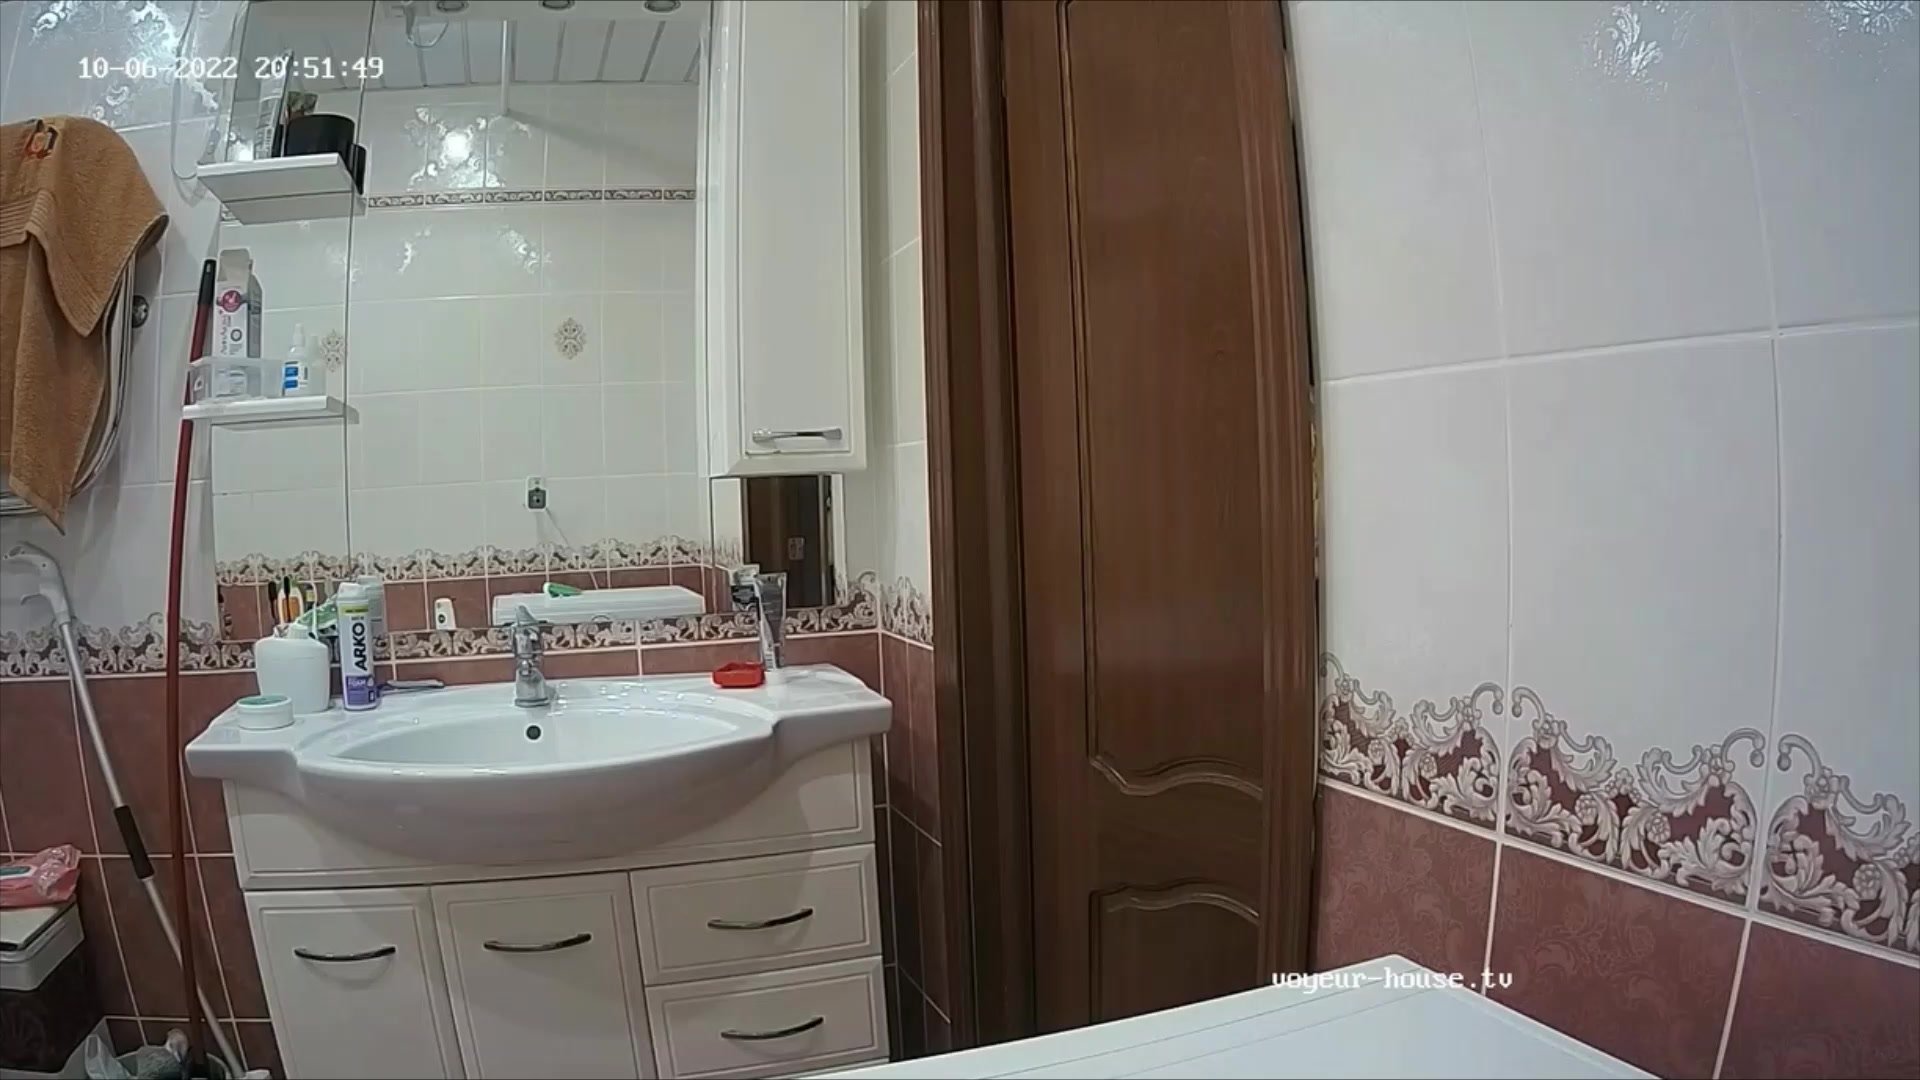 Woman in Toilet